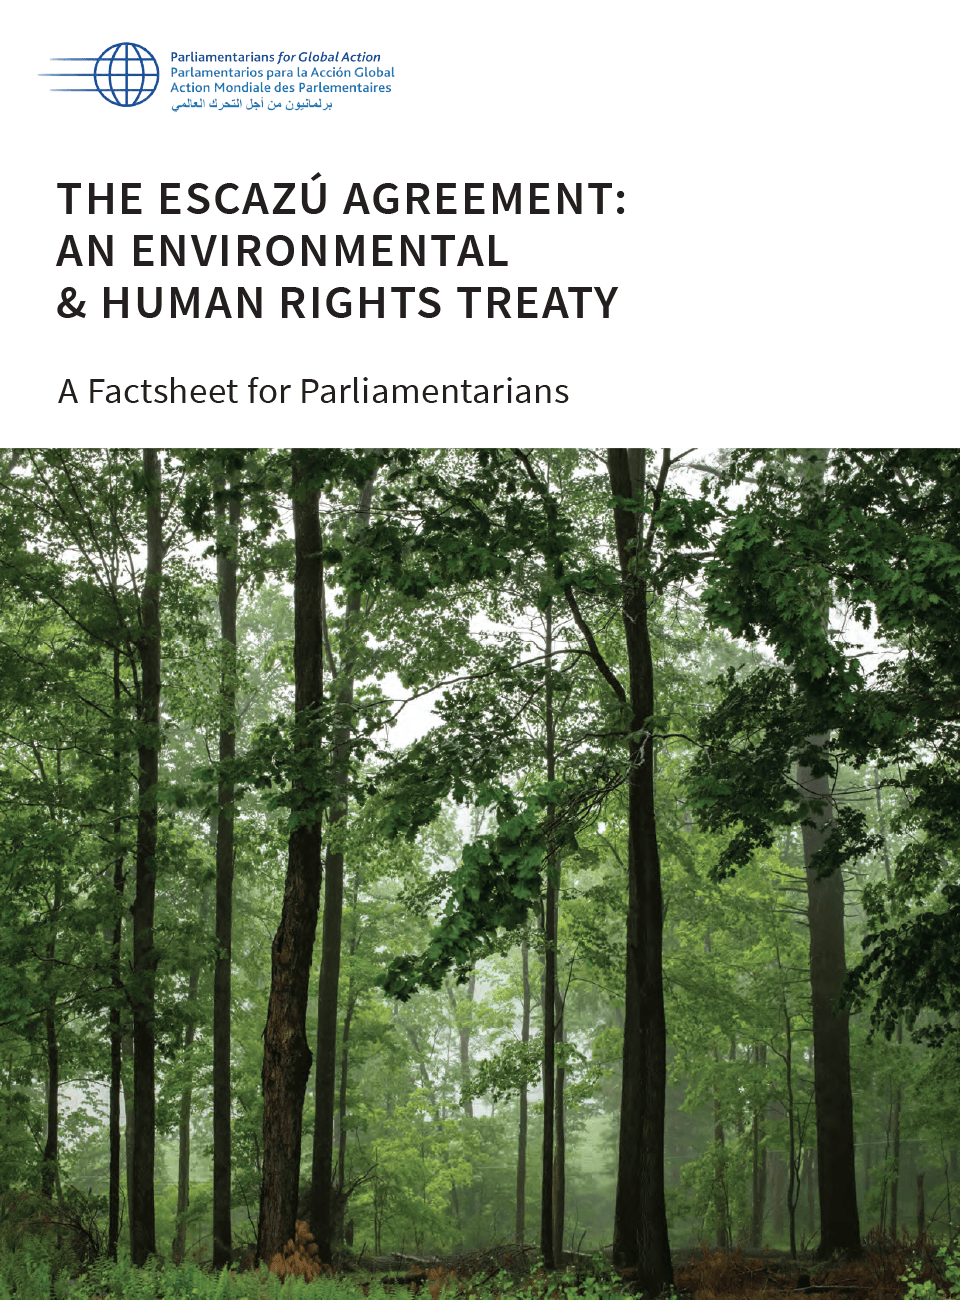 Hoja informativa para parlamentarios: El Acuerdo de Escazú, un tratado sobre medio ambiente y derechos humanos